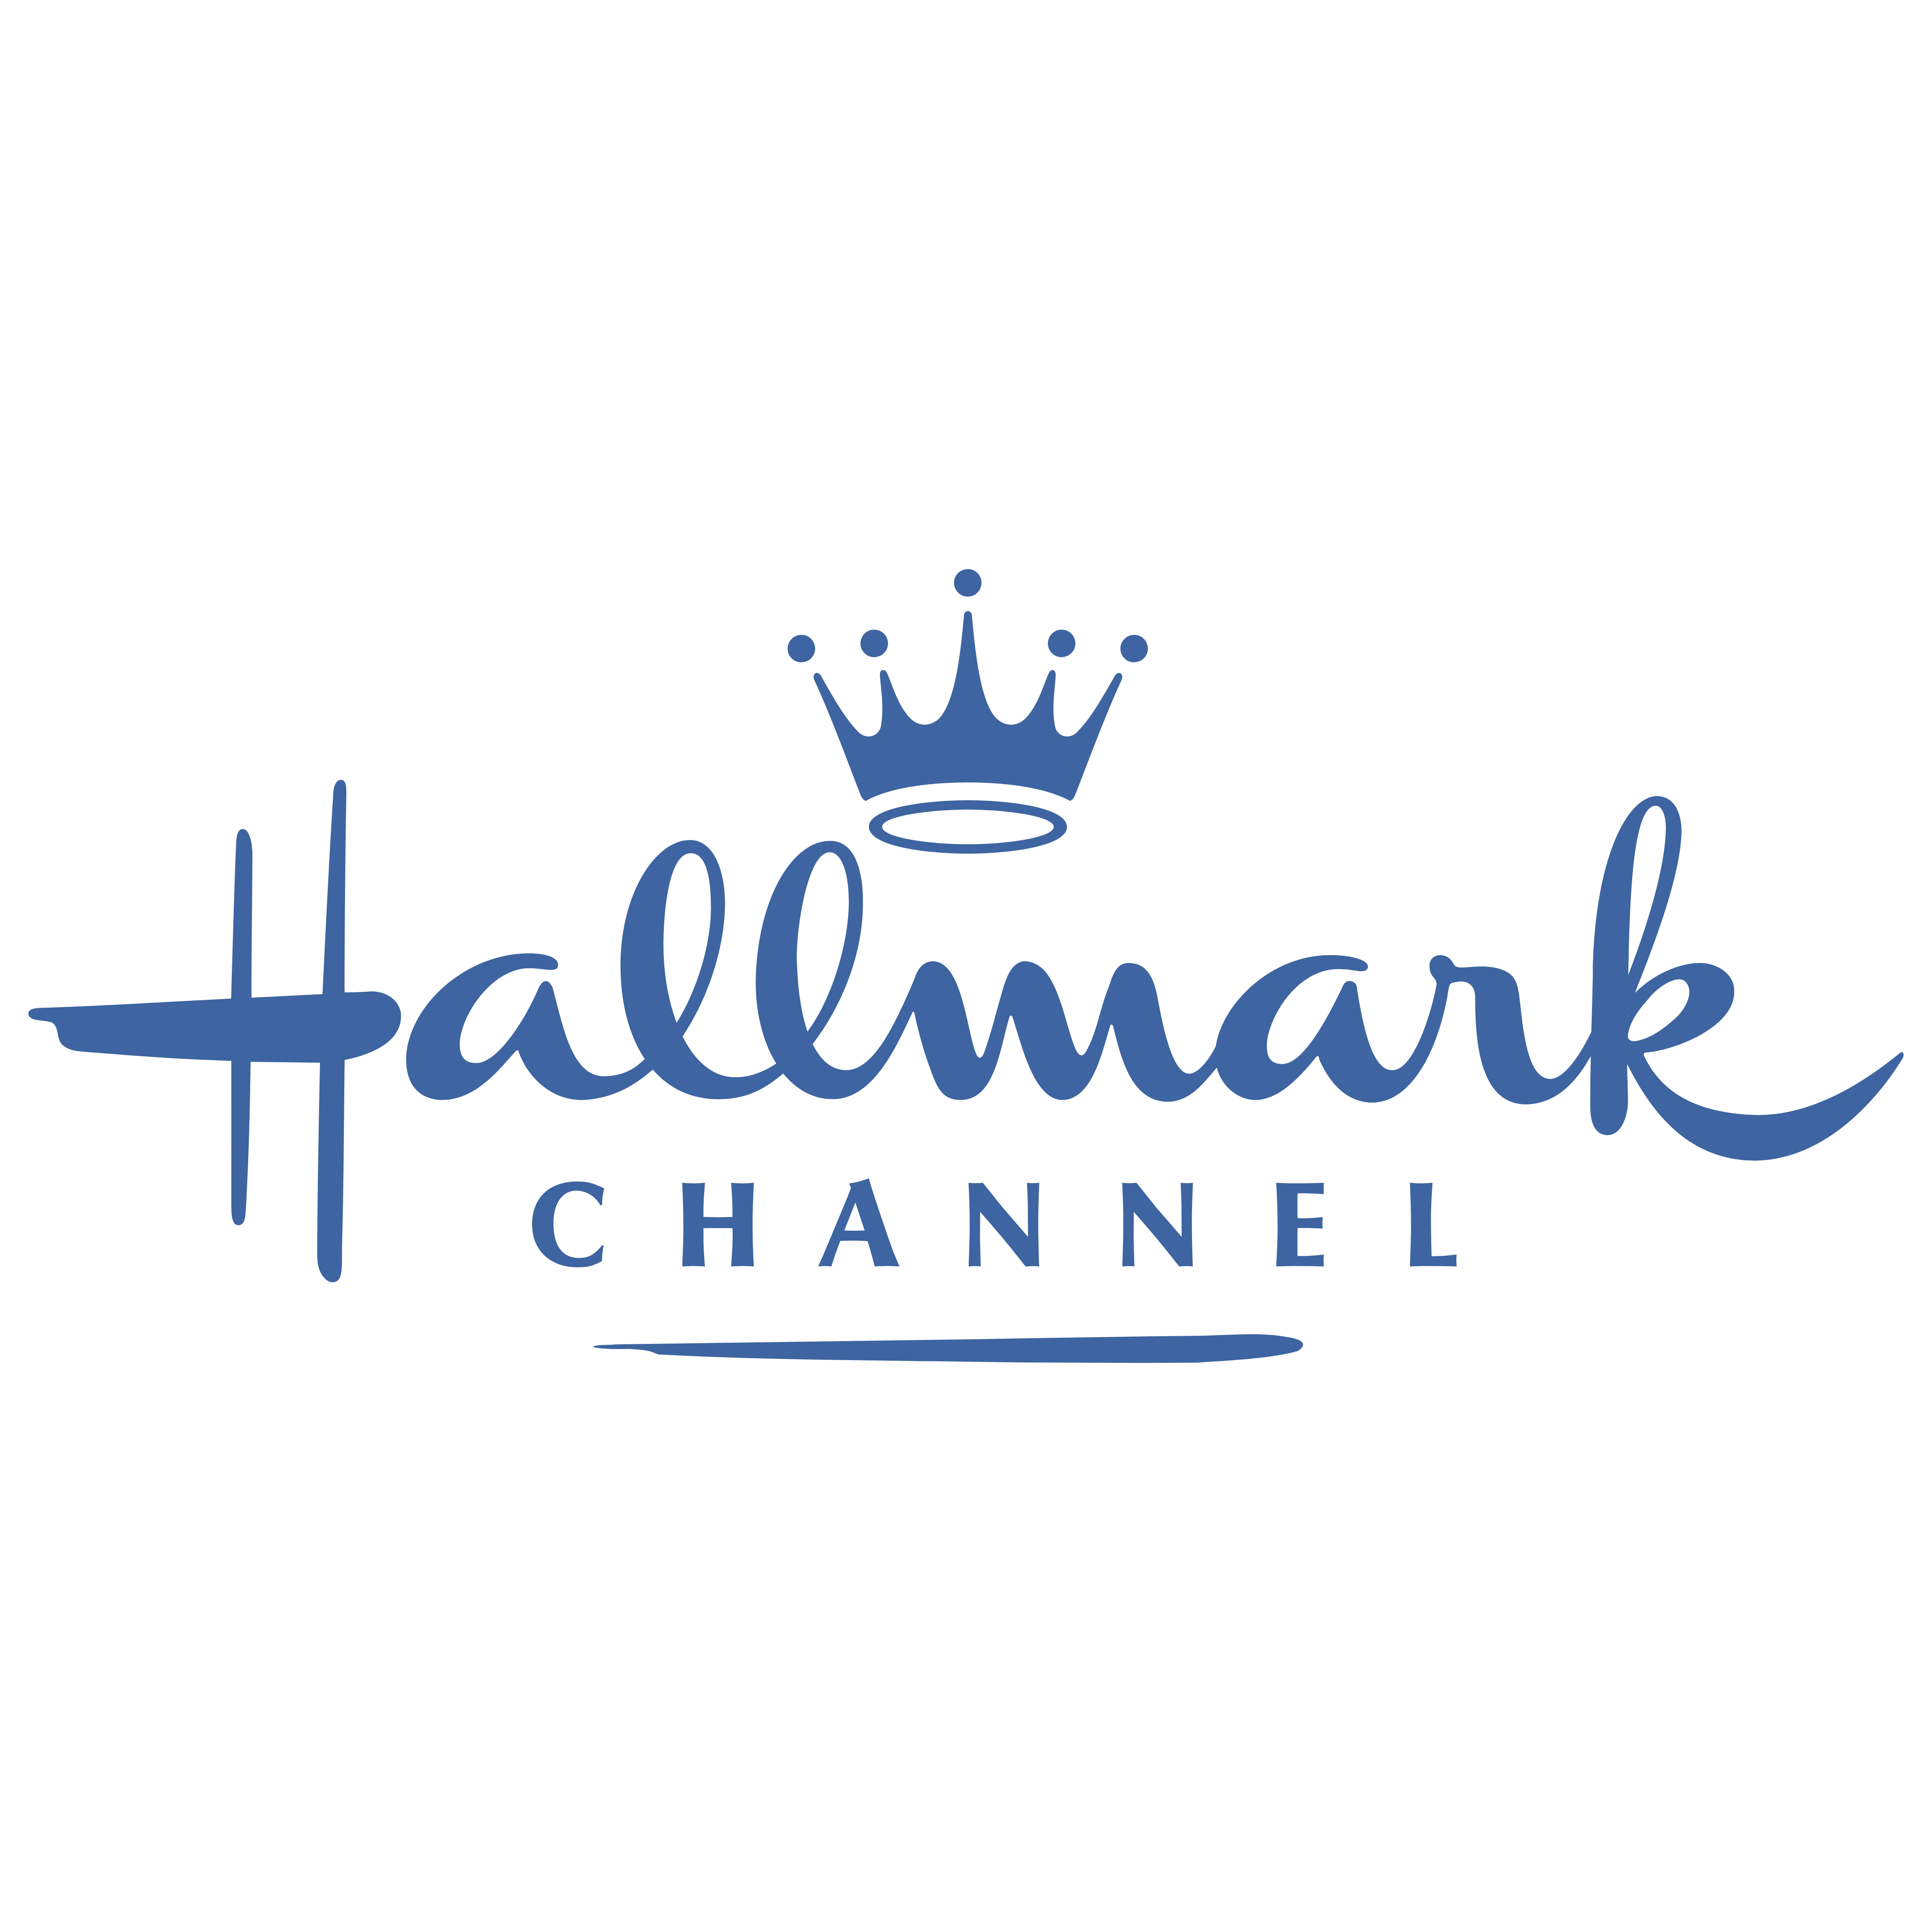 Hallmark Channel.